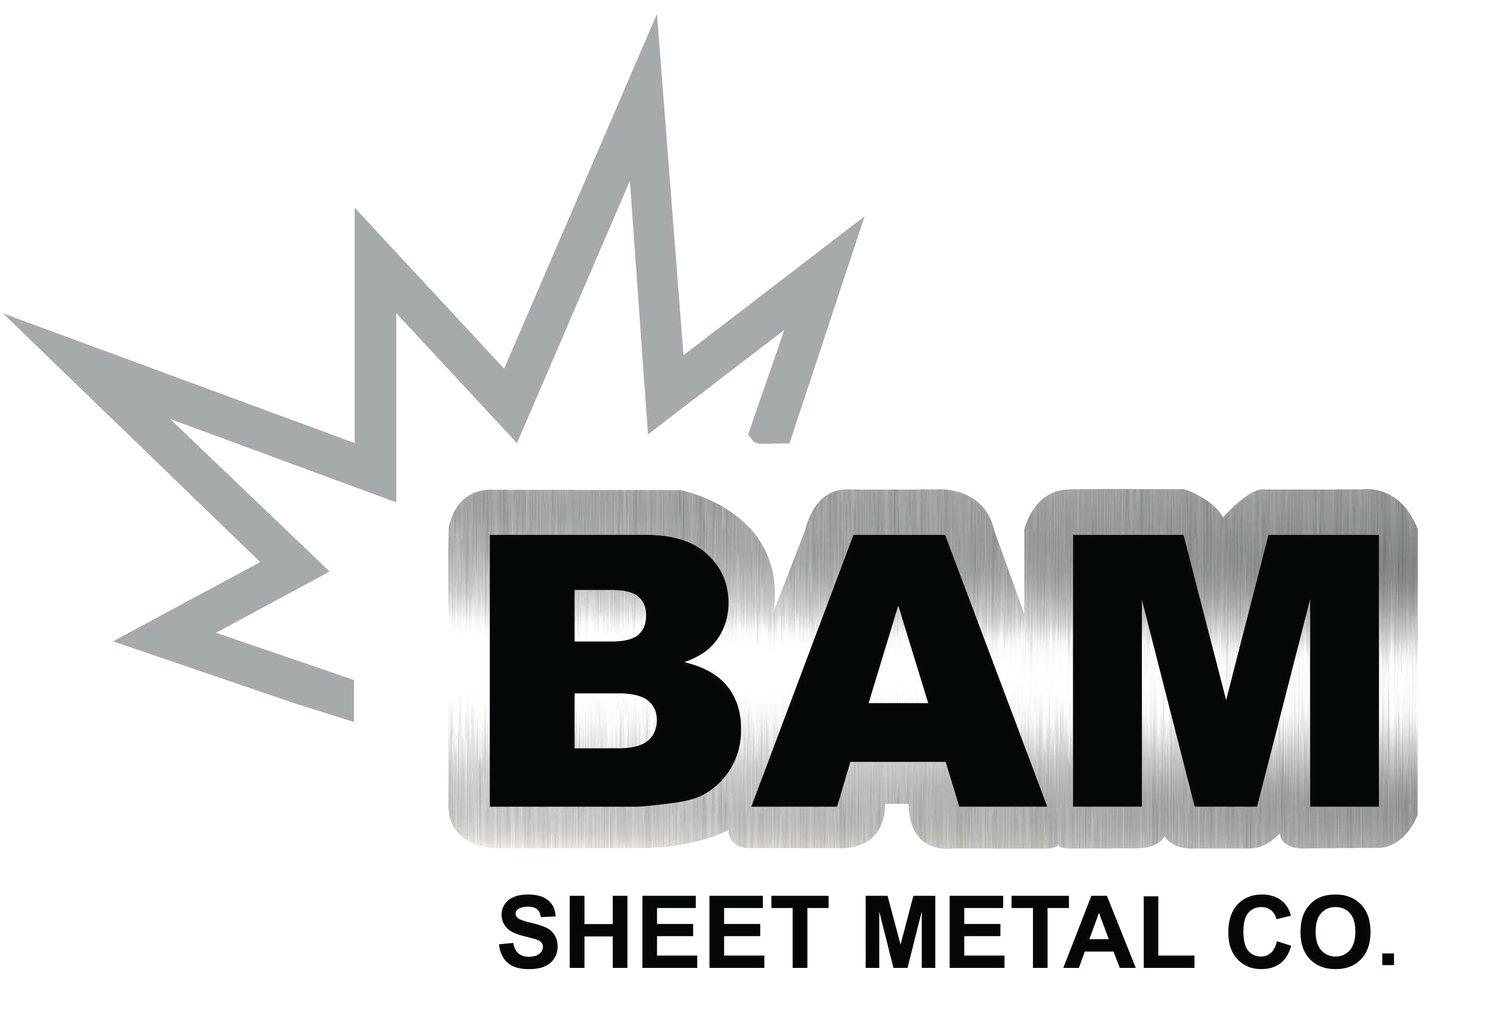 BAM Sheet Metal Co.